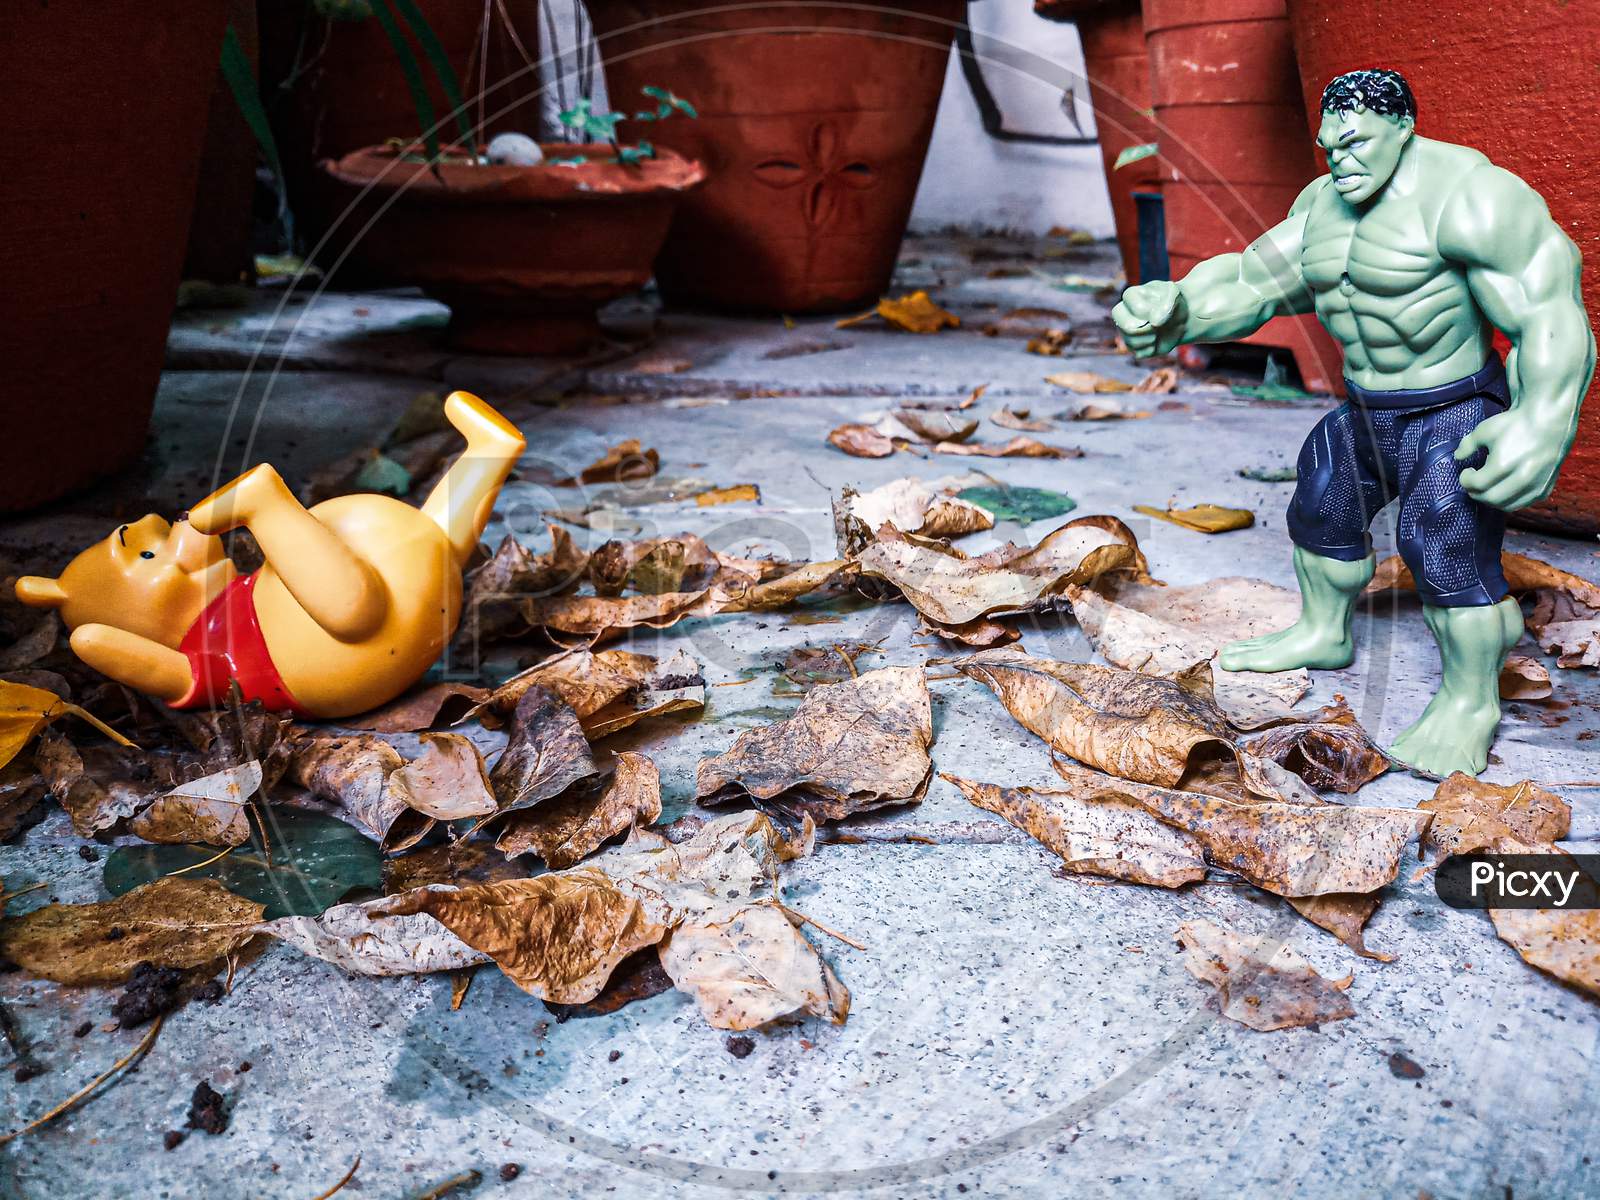 Hulk smashed the pooh!